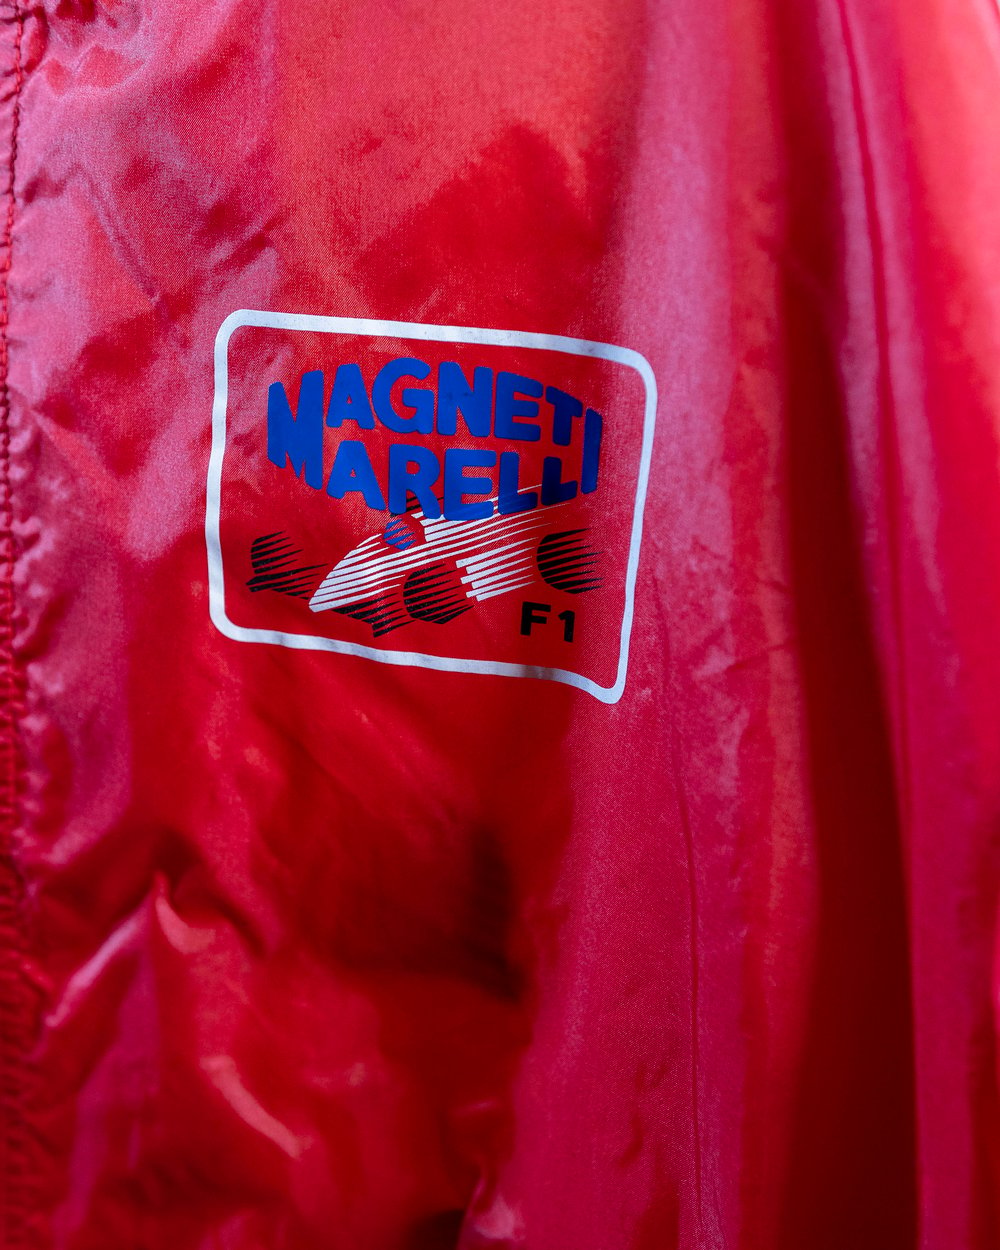 Magneti Marelli Jacket (Large)